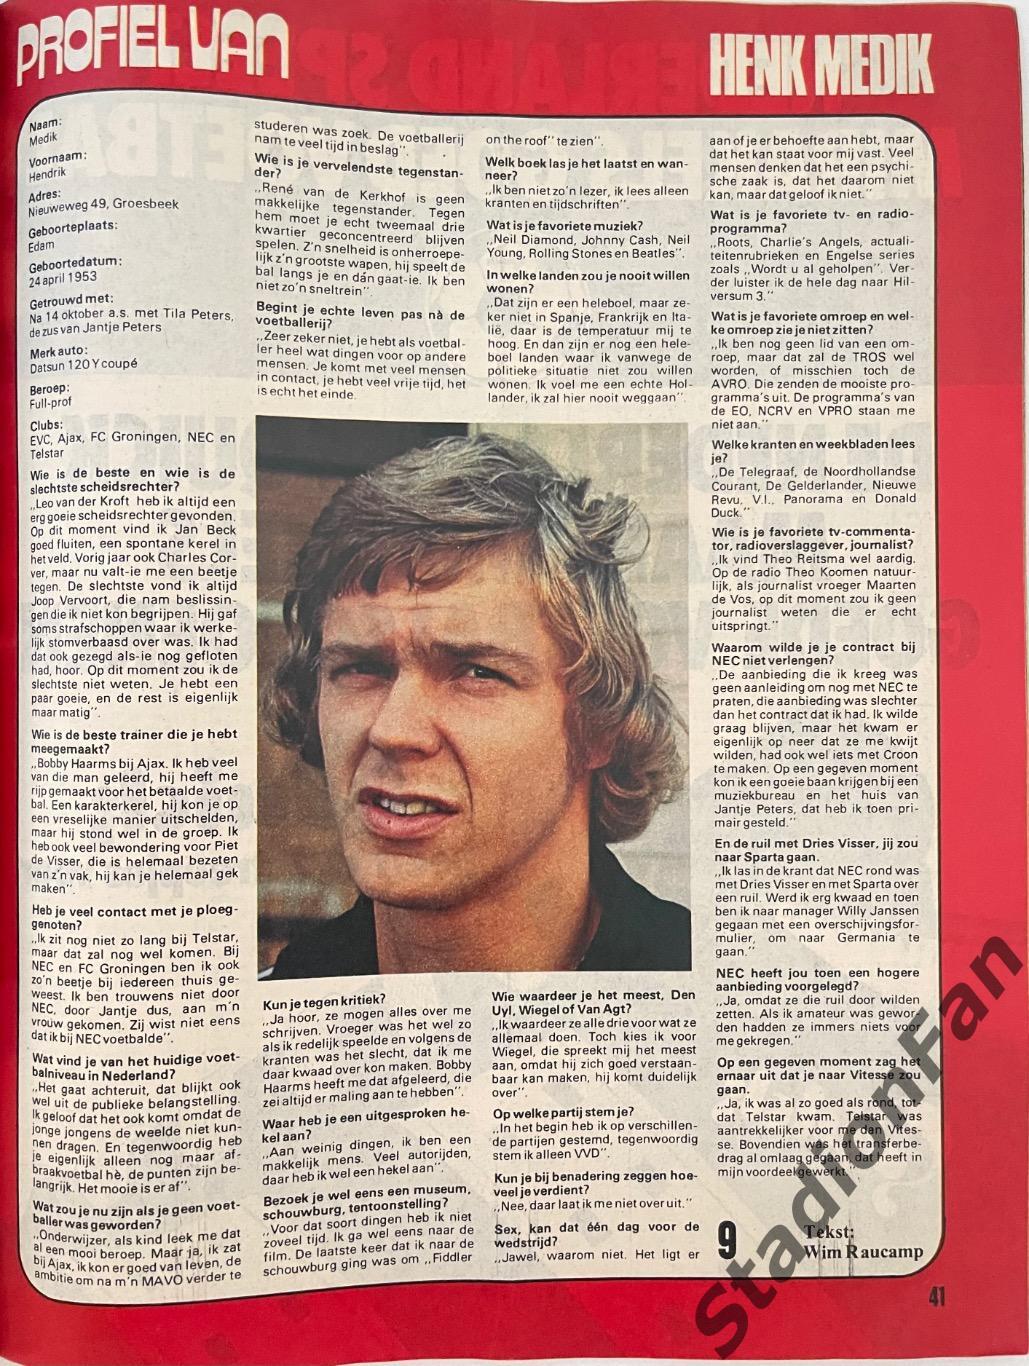 Журнал Voetbal nr.40 - 1977 год. 4